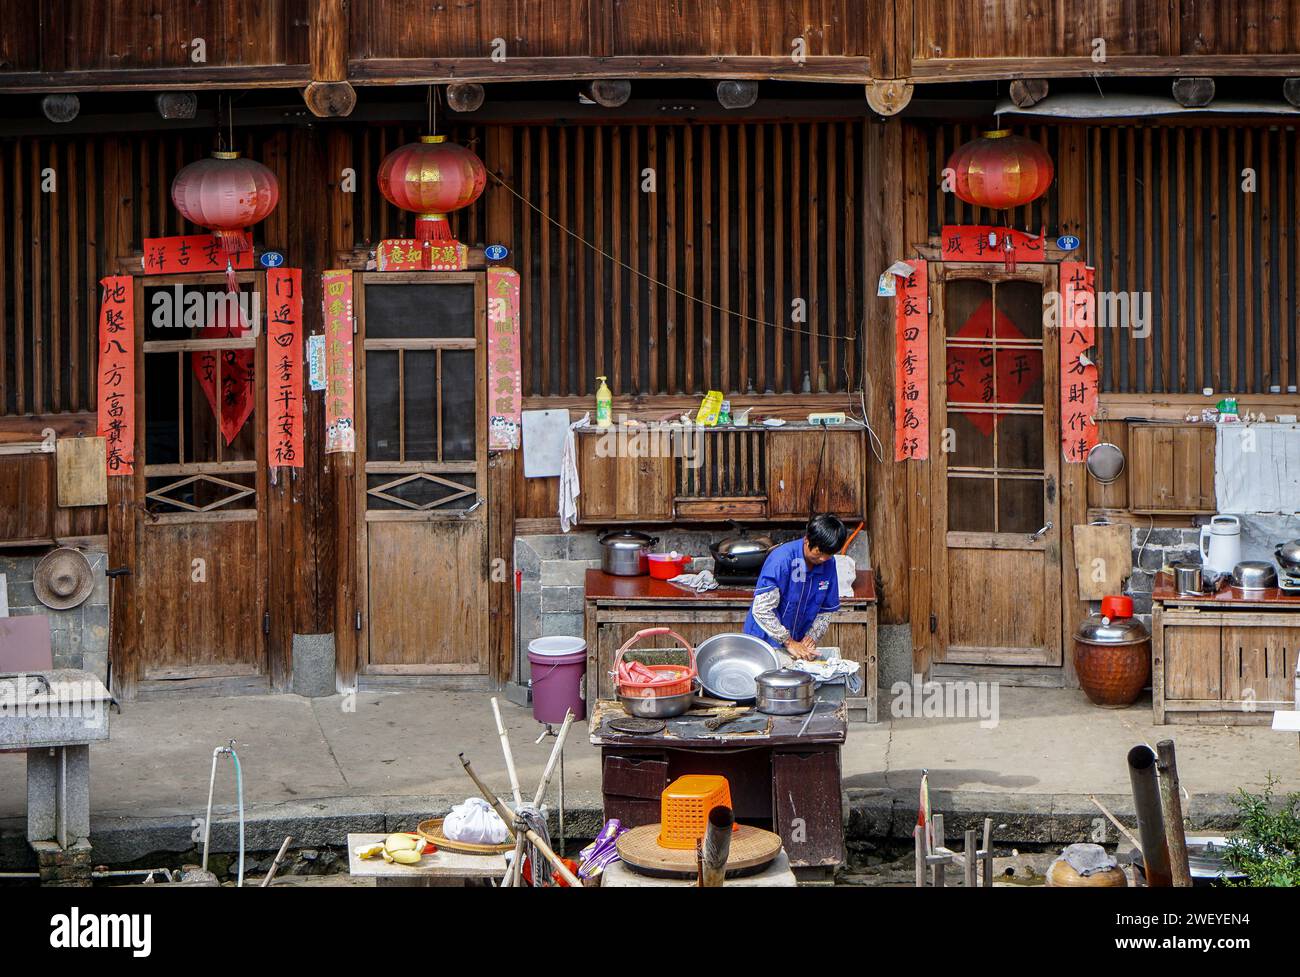 Cuisine en plein air dans la cour d'un Tulou (bâtiment en terre battue et bois) dans le village de Hekeng, comté de Nanjing, province du Fujian, Chine Banque D'Images